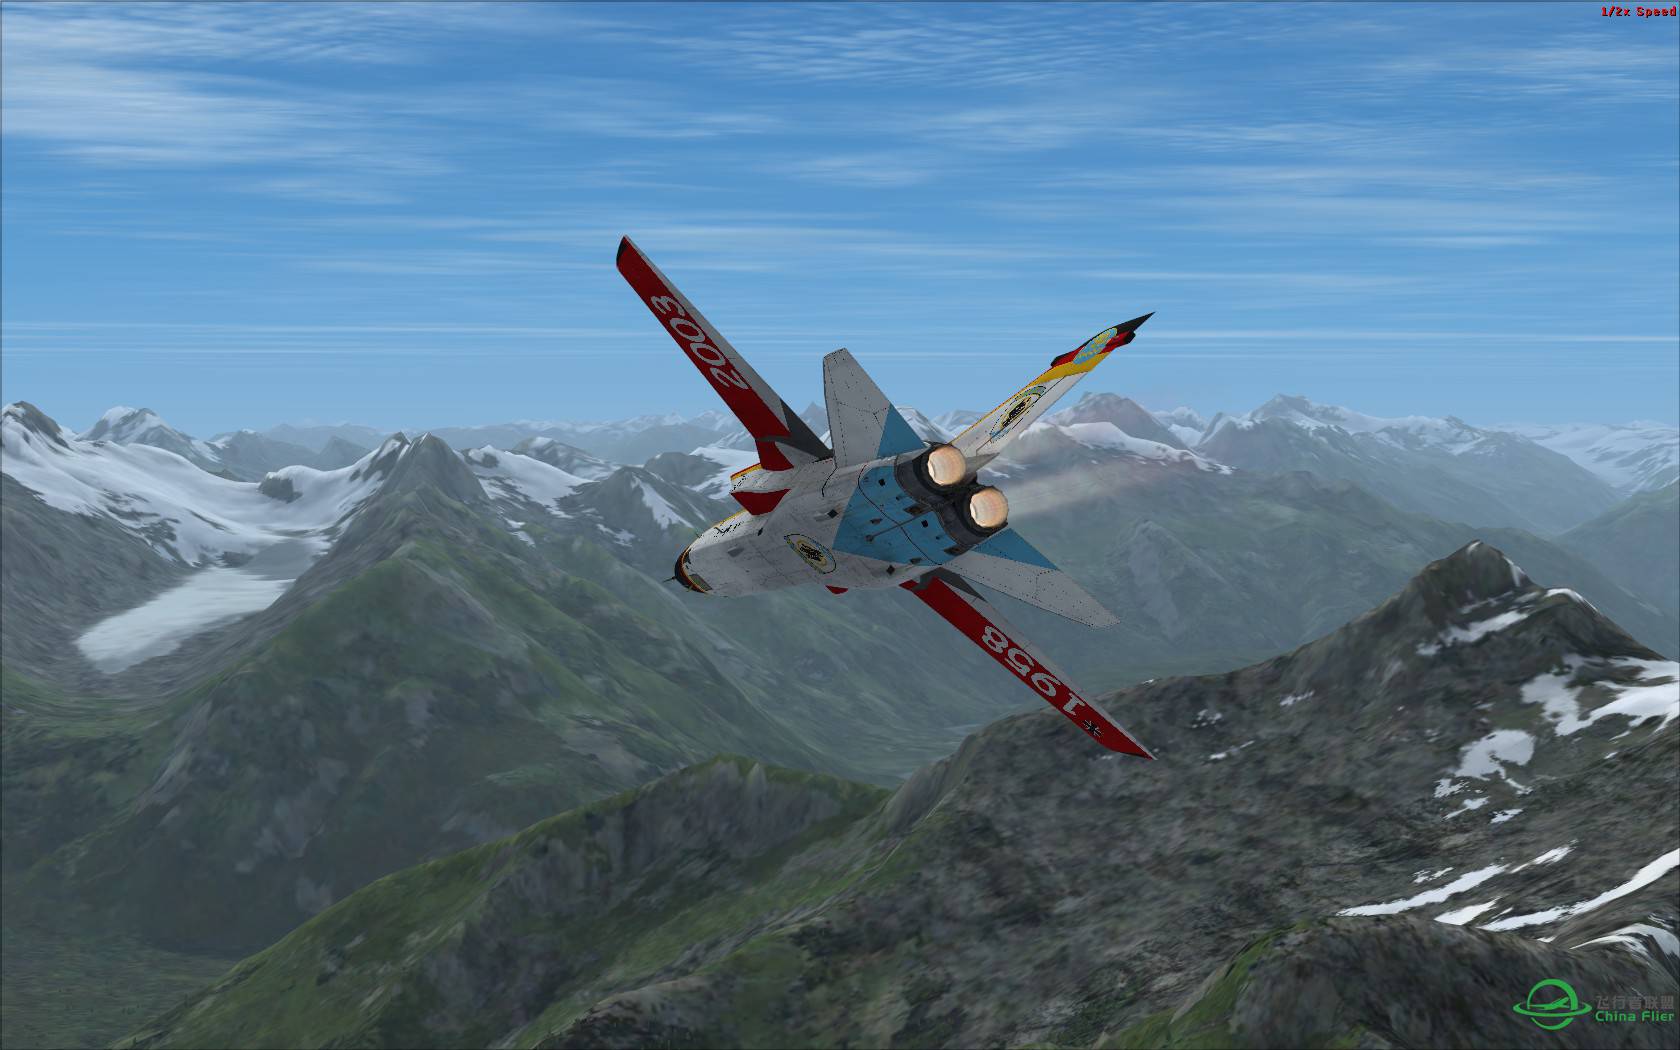 冰与火之歌:最新Just Flight狂风战机火红涂装与蓝色北美冰...-8669 